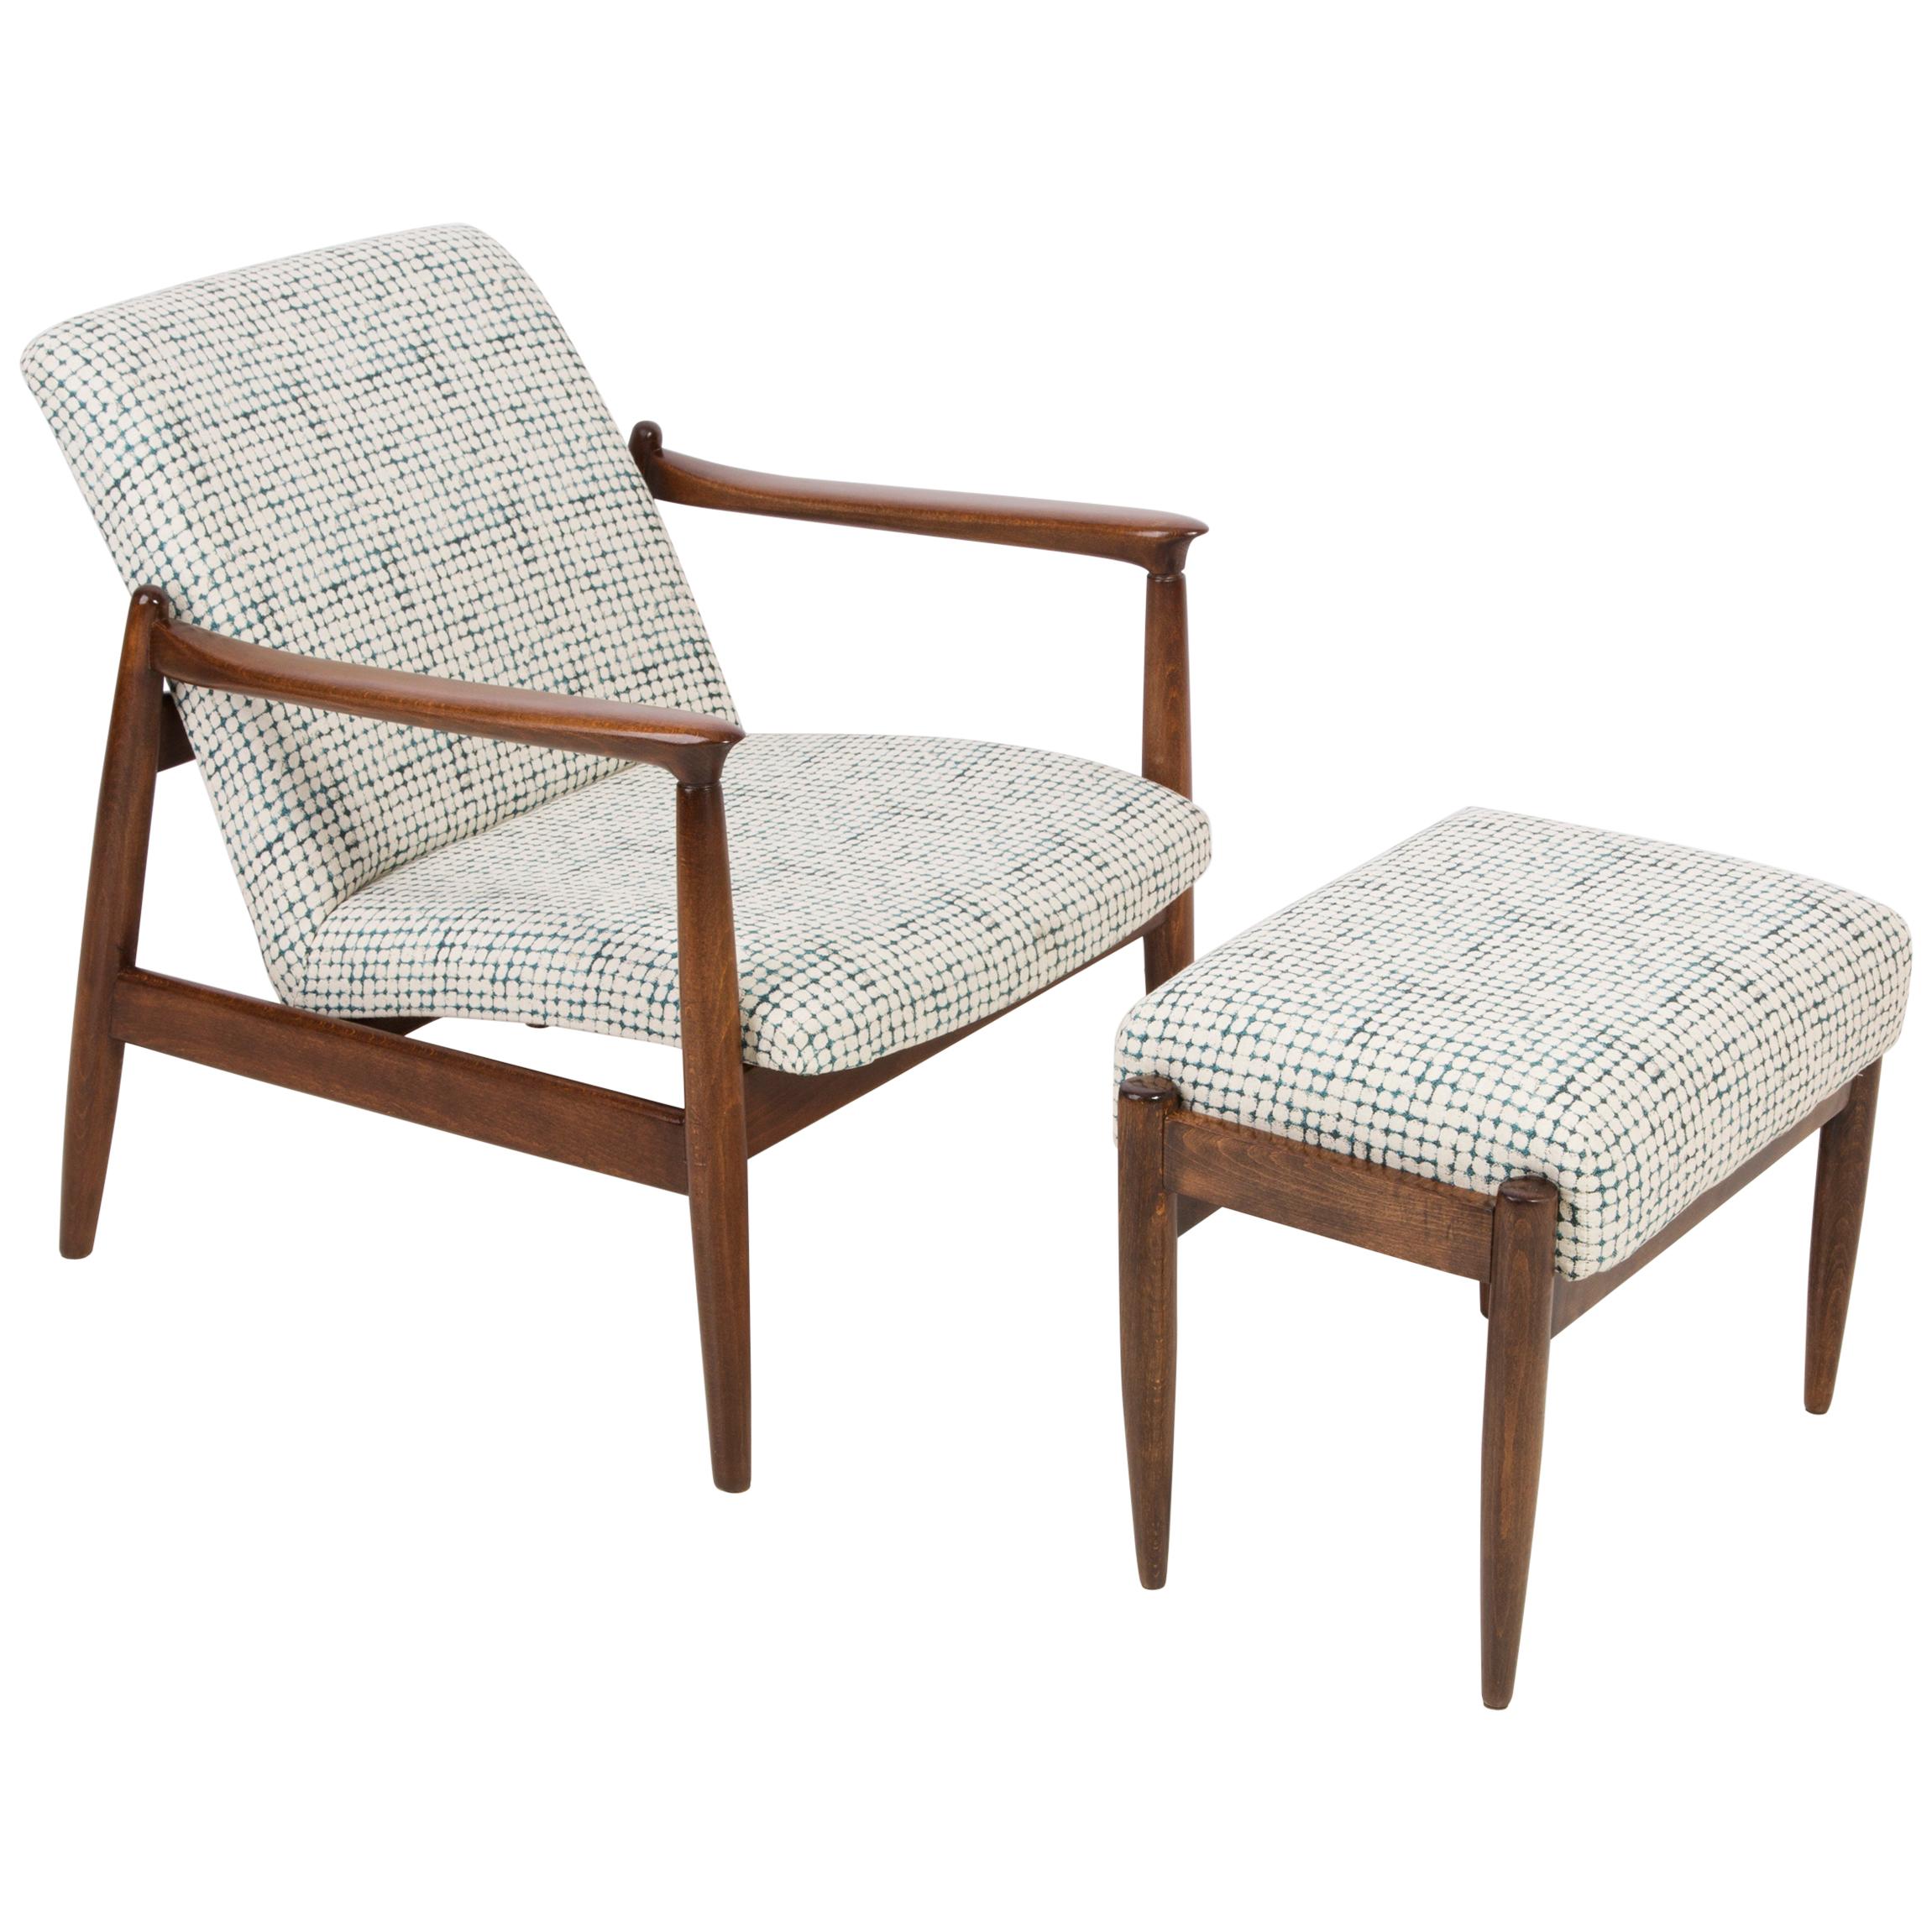 Vintage-Sessel und Hocker in Weiß und Aqua, Edmund Homa, 1960er Jahre